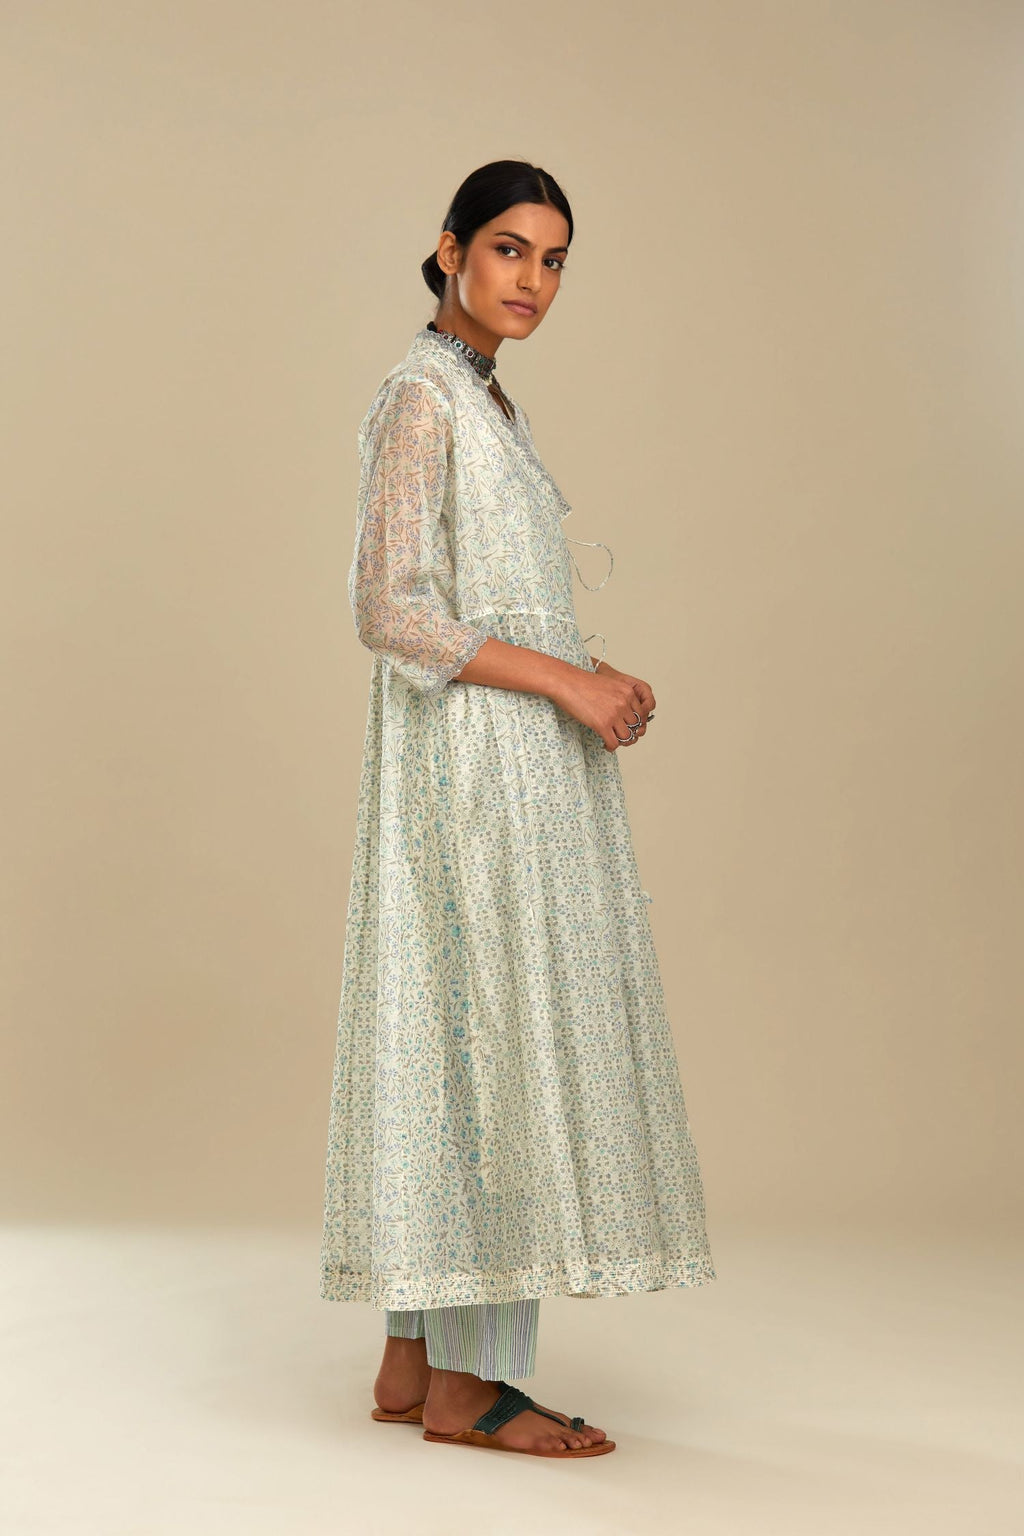 Cotton chanderi blue and green printed angrakha kurta set